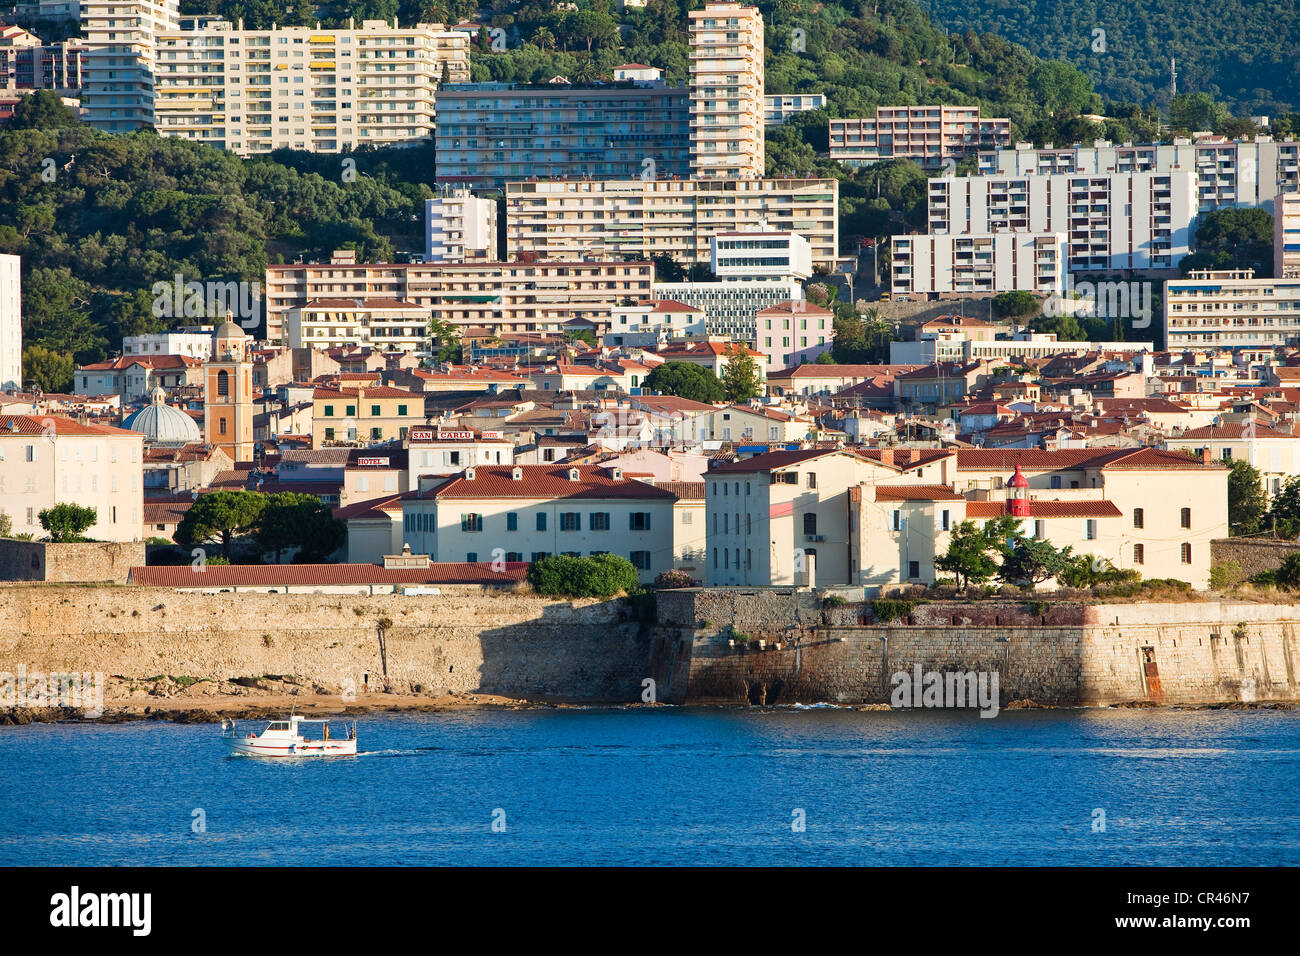 France, Corse du Sud, Ajaccio, la citadelle et la ville vue de la mer Banque D'Images